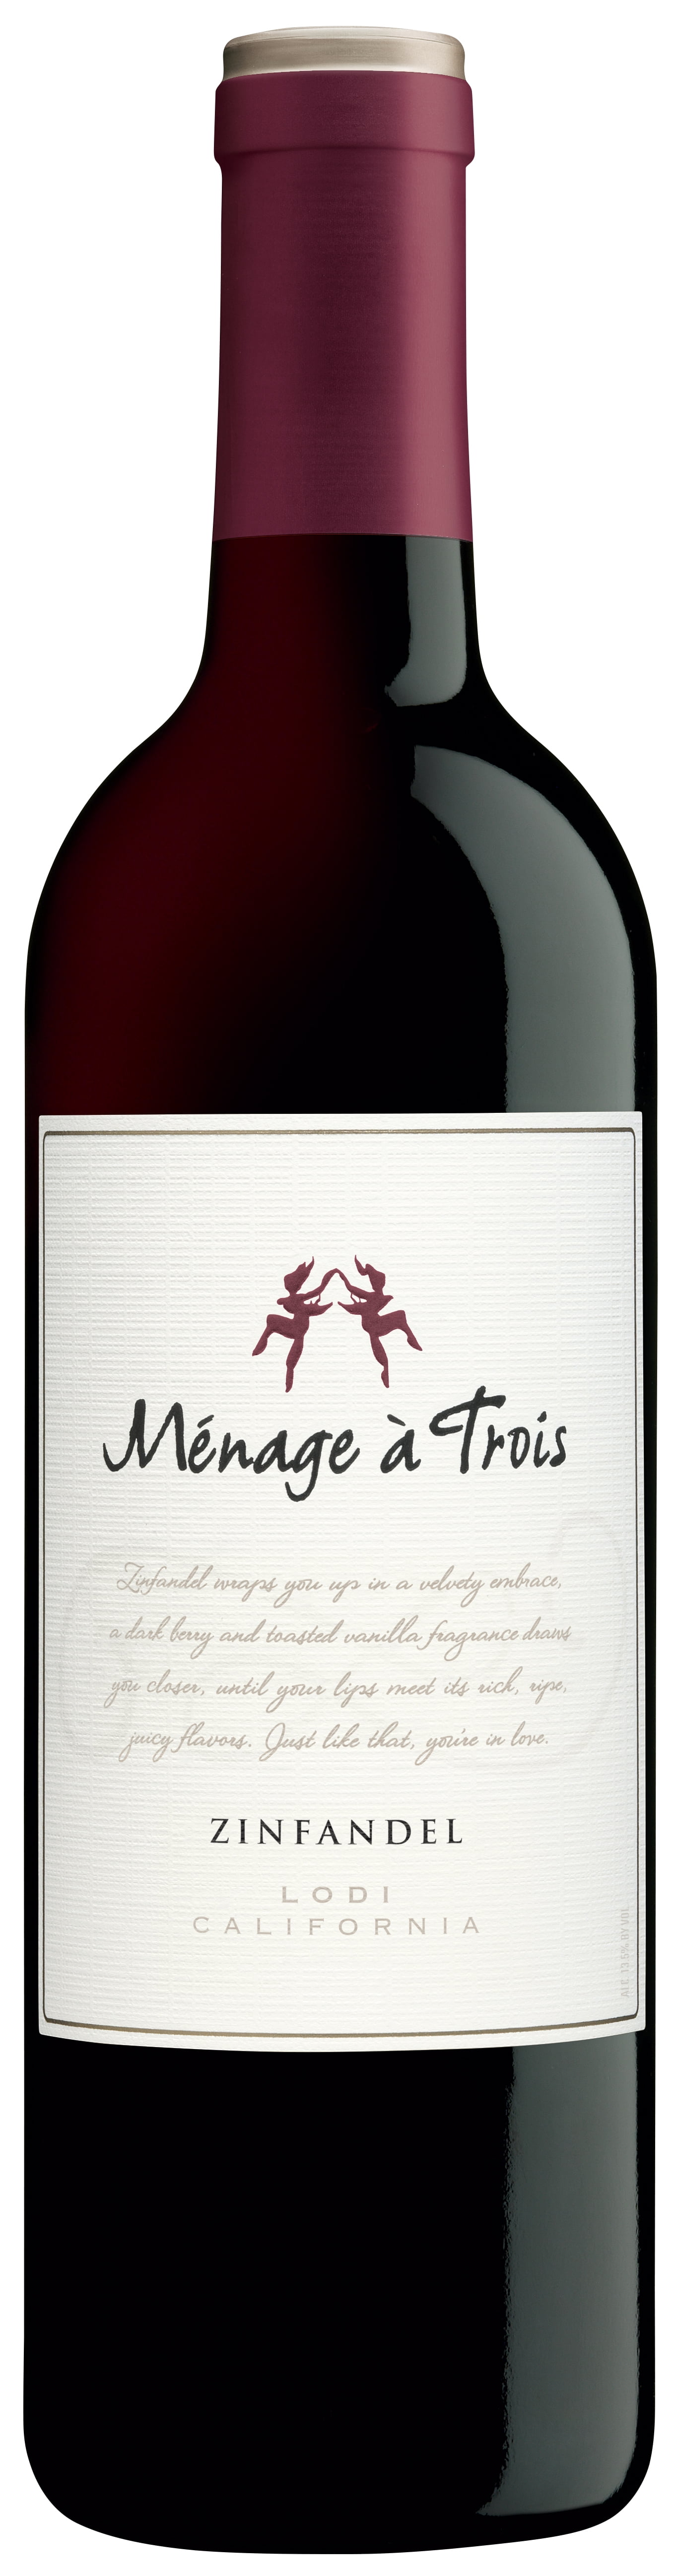 Menage A Trois Zinfandel Red Wine 750ml Wine Bottle